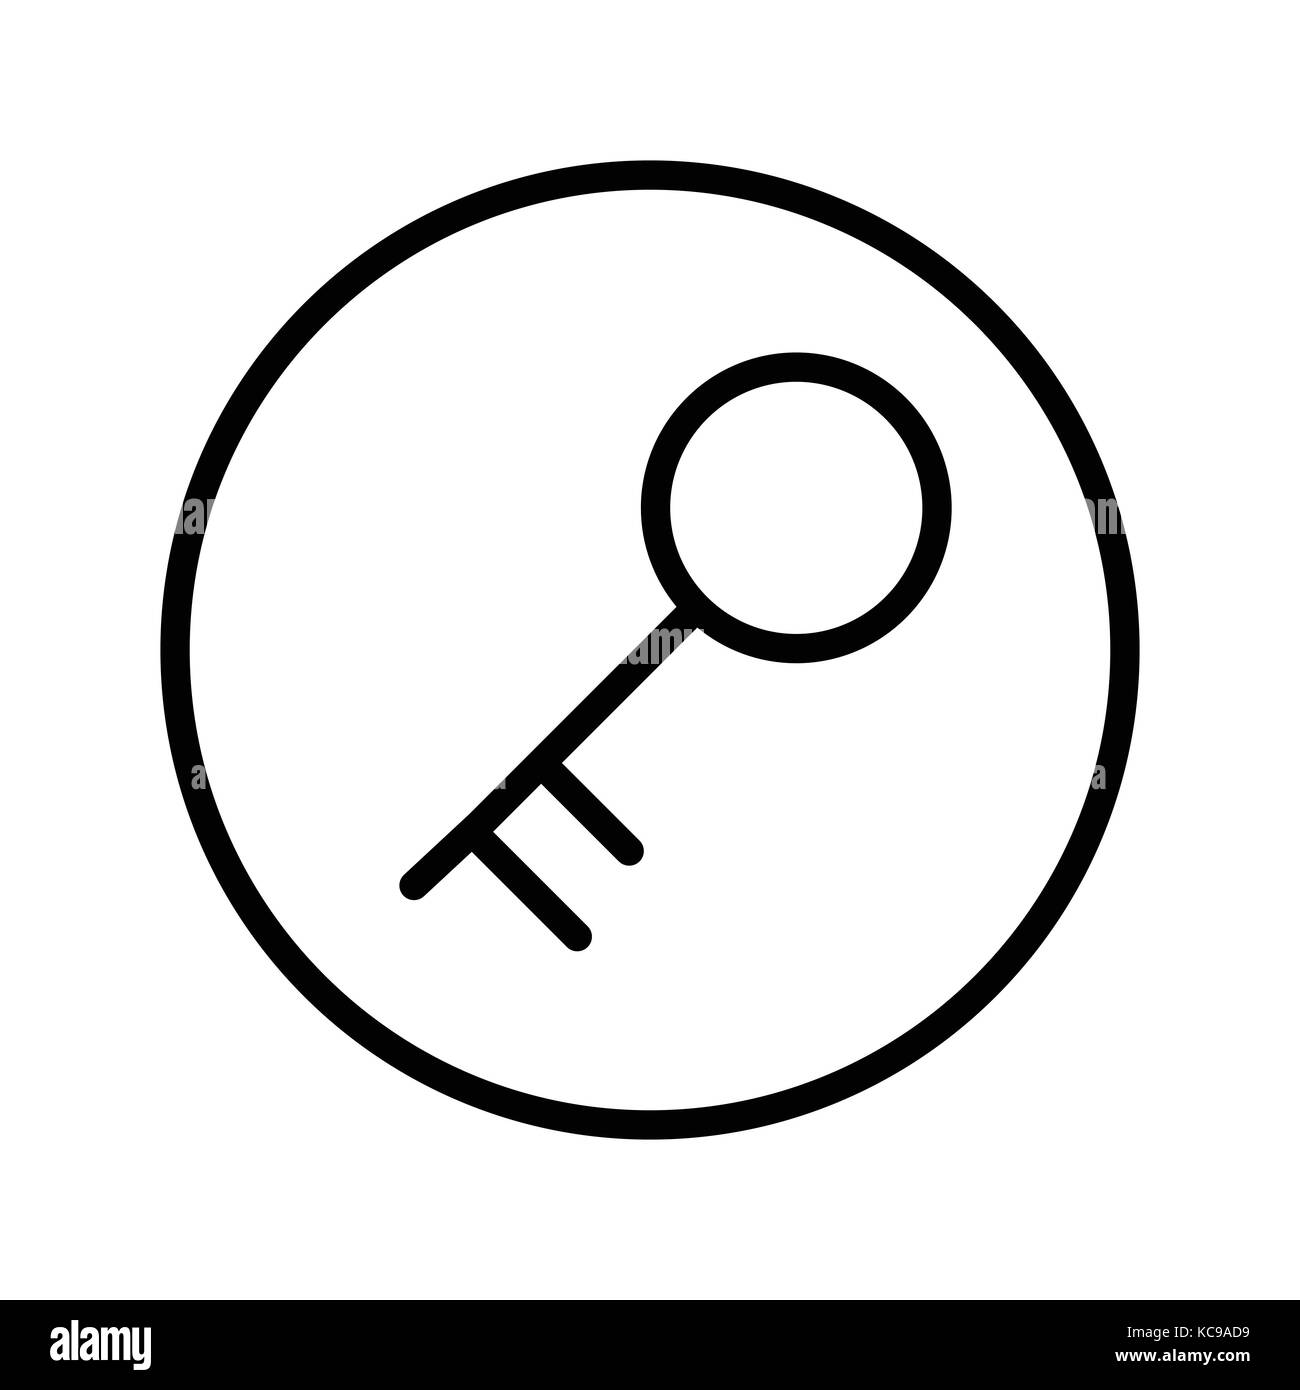 Vecteur de l'icône de clé en ligne circle, symbole iconique dans un cercle, sur fond blanc. vector design iconique. Illustration de Vecteur